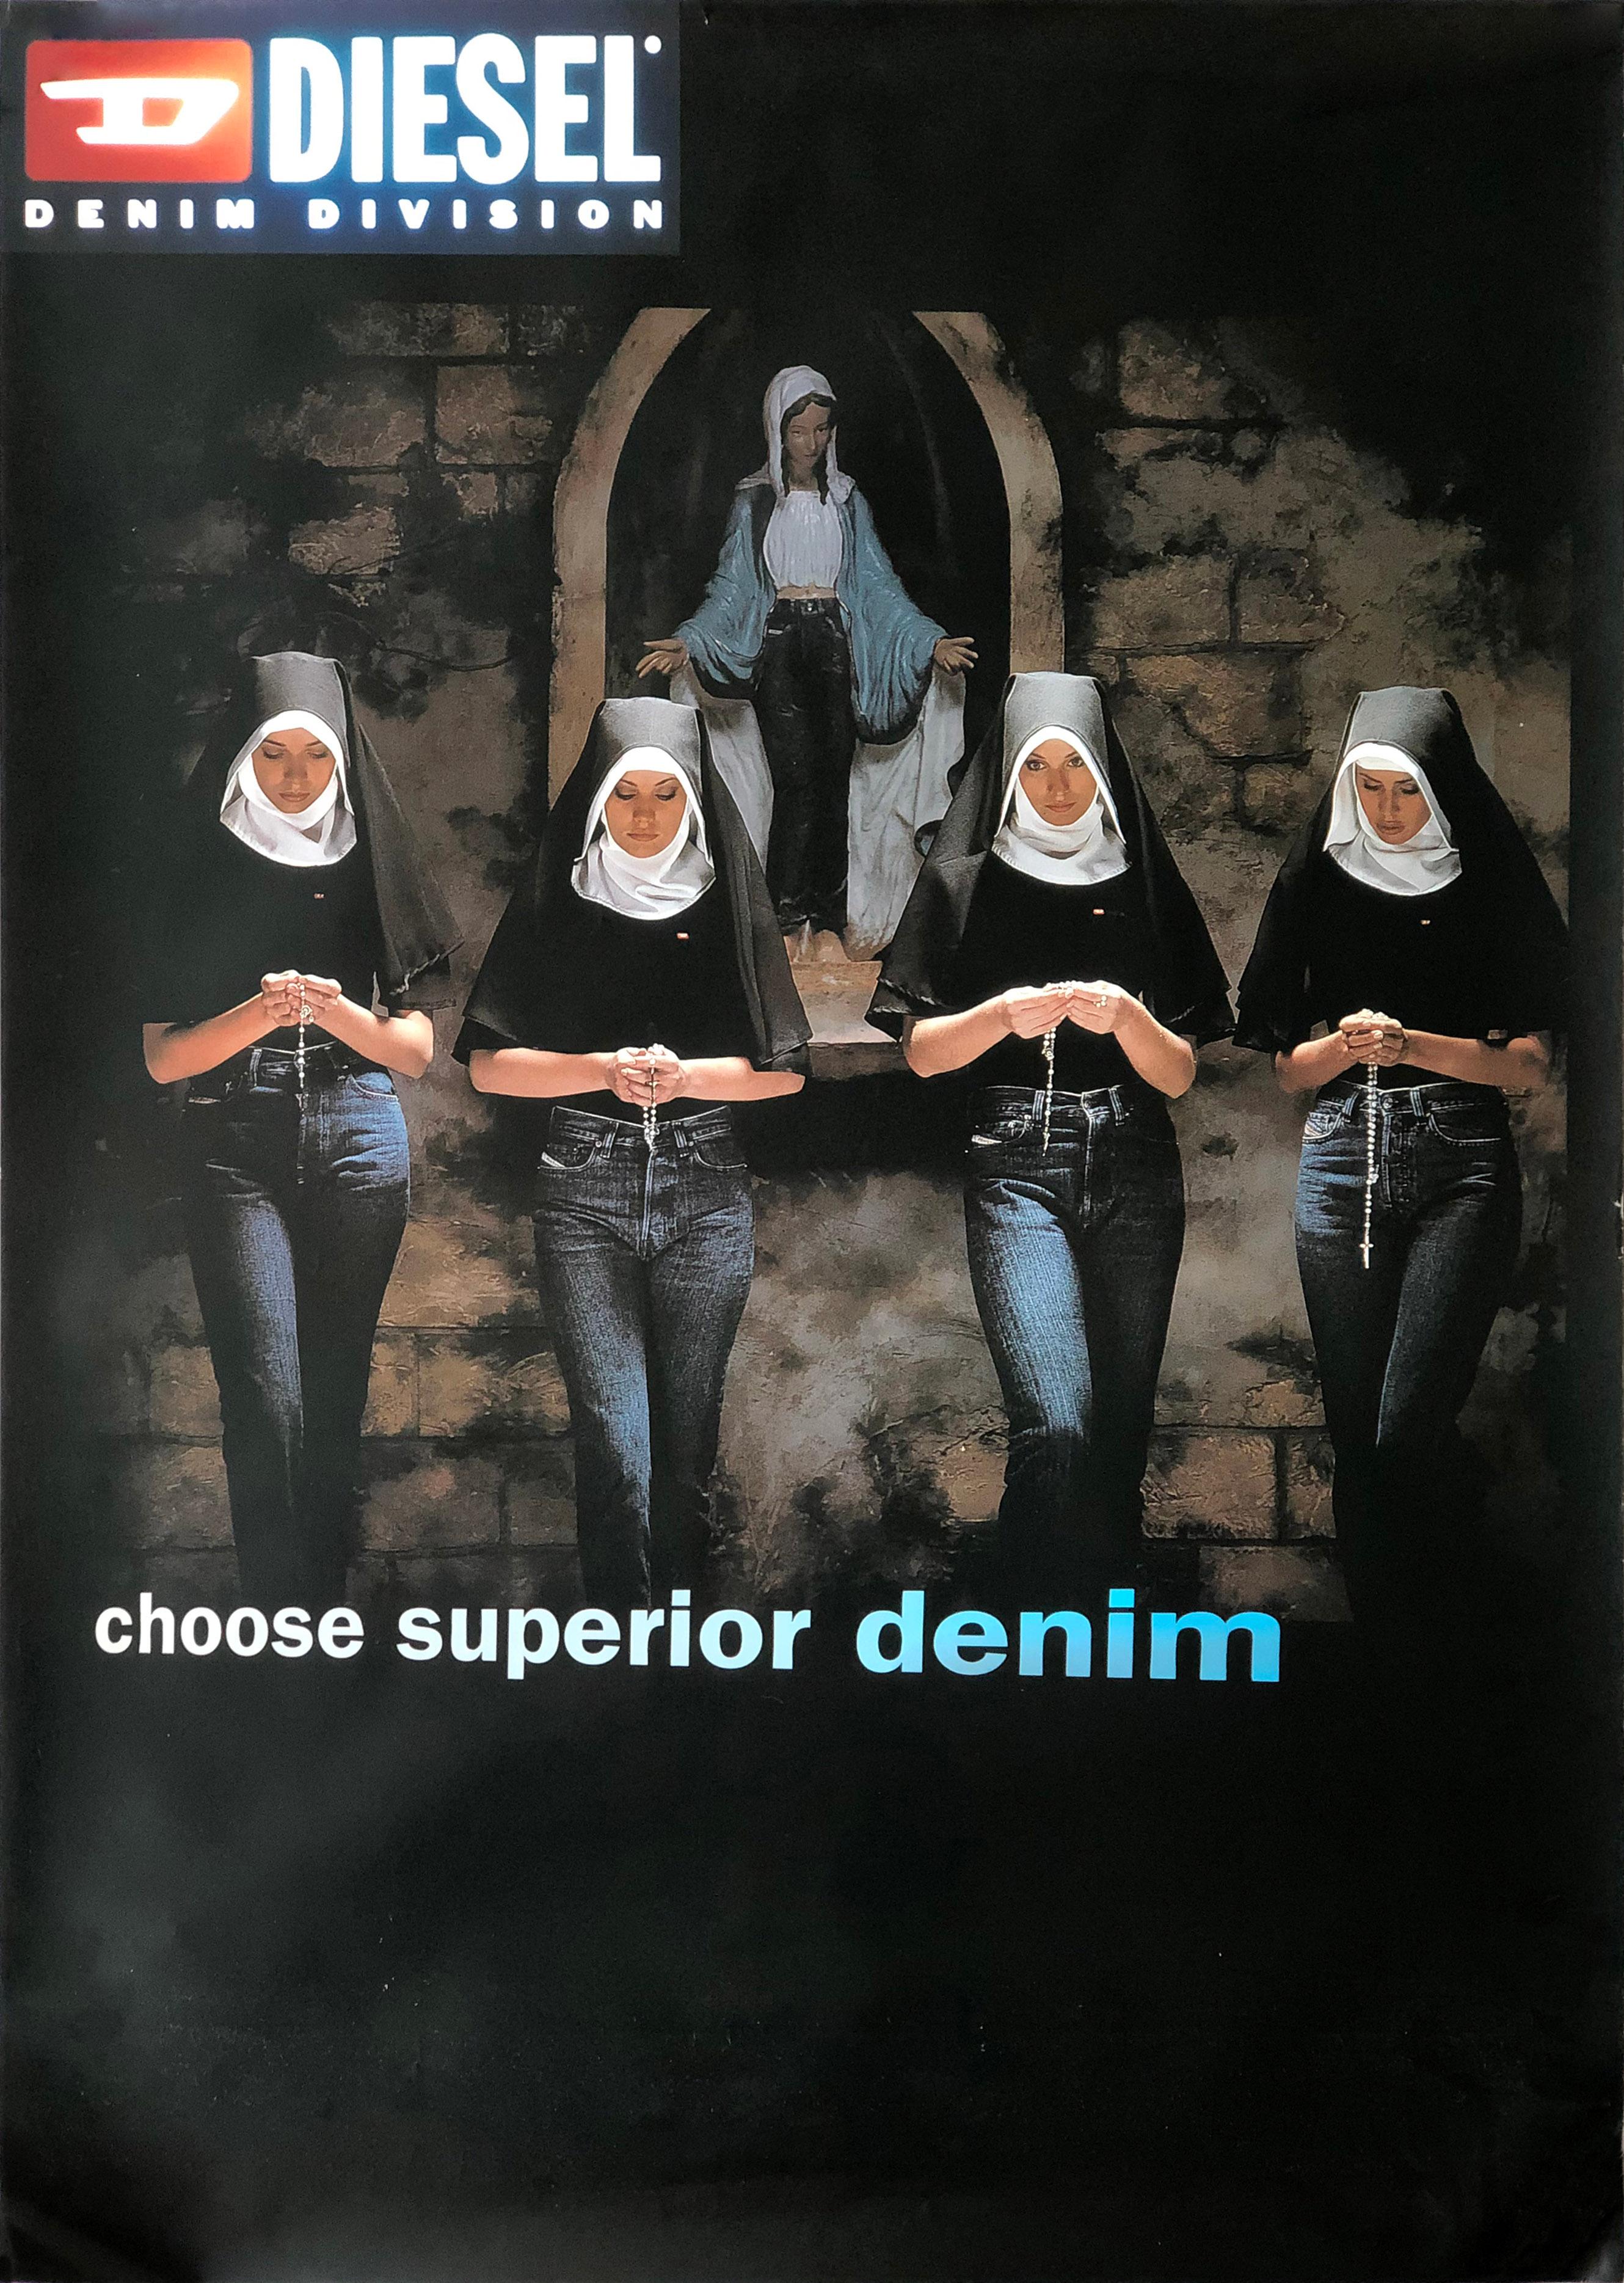 Erwin Olaf - Fashion Victims - 1998 Diesel (DSL) Dirty Denim - Original Plakataushang
Eine Gruppe von betenden jungen Nonnen in Diesel-Jeans/Denim.
Maße 70 x 100 cm

Damals umstrittene Kampagne für Diesel Denim von Erwin Olaf.
Originalplakat für